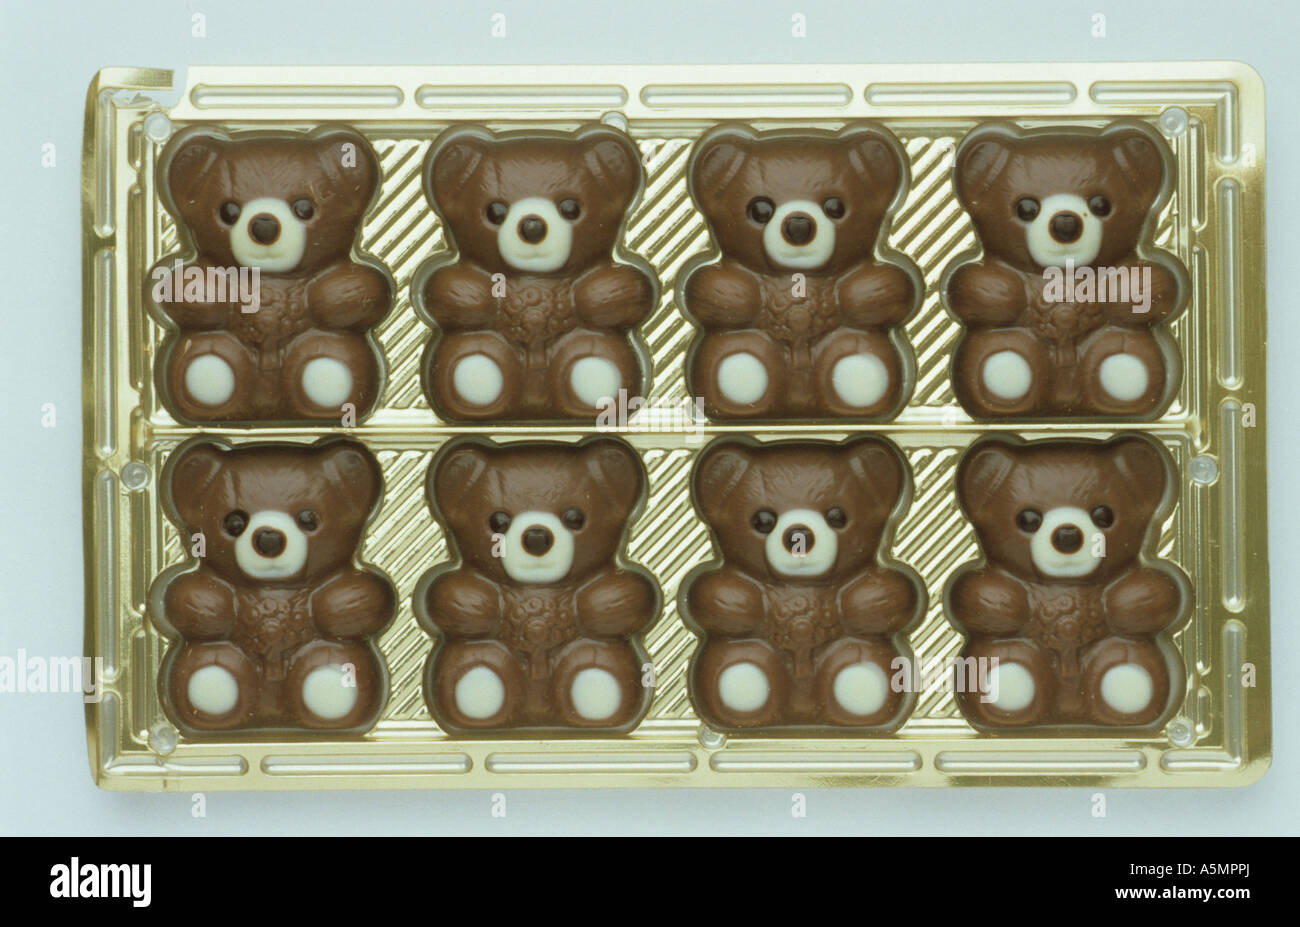 Schokolade chocolate Lebensmittel Nahrungsmittel Nahrung food generi alimentari alimentazione nutrizione Süßigkeiten und Knabber Stock Photo